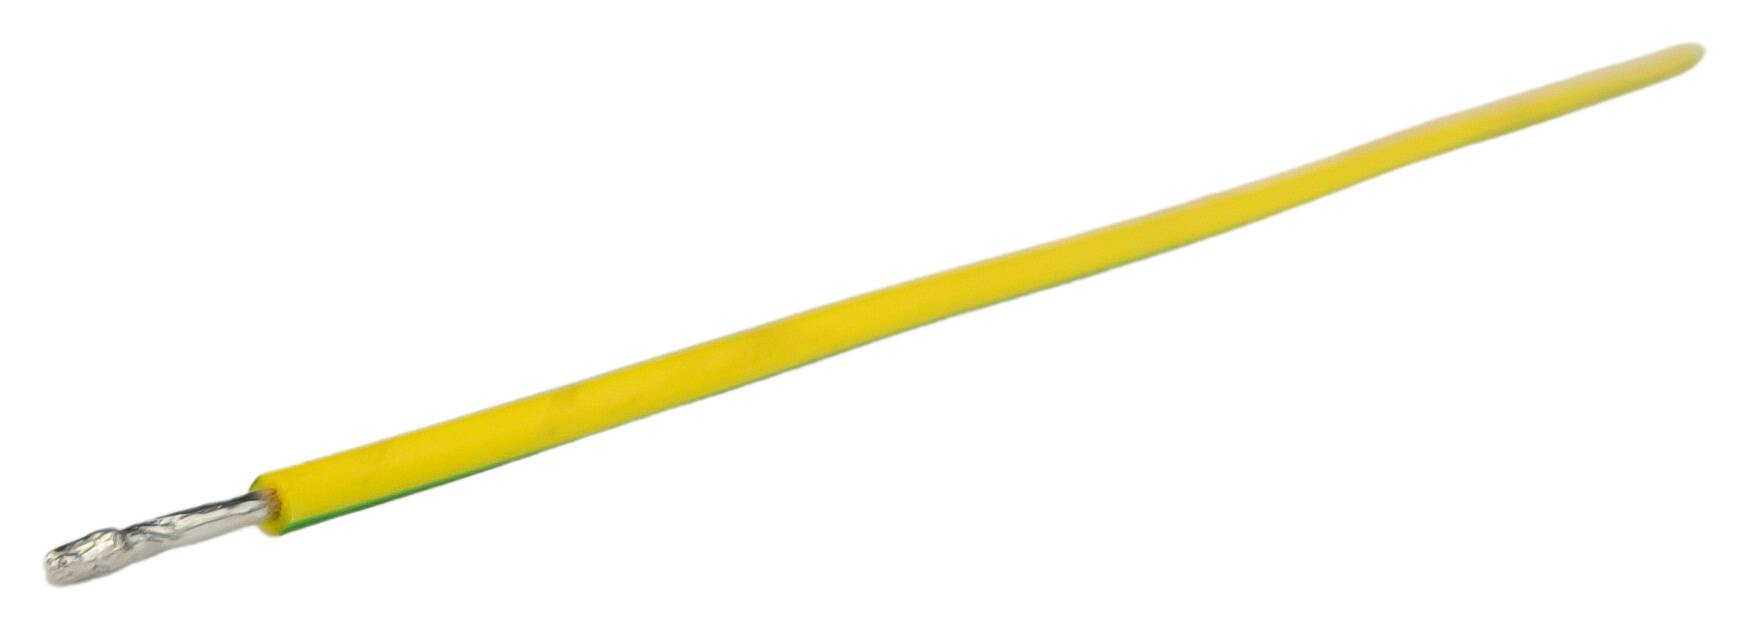 Litzen-Zuschnitt 1x1,50 halogenfrei 600 mm 11/11 verdrillt+verzinnt grün-gelb